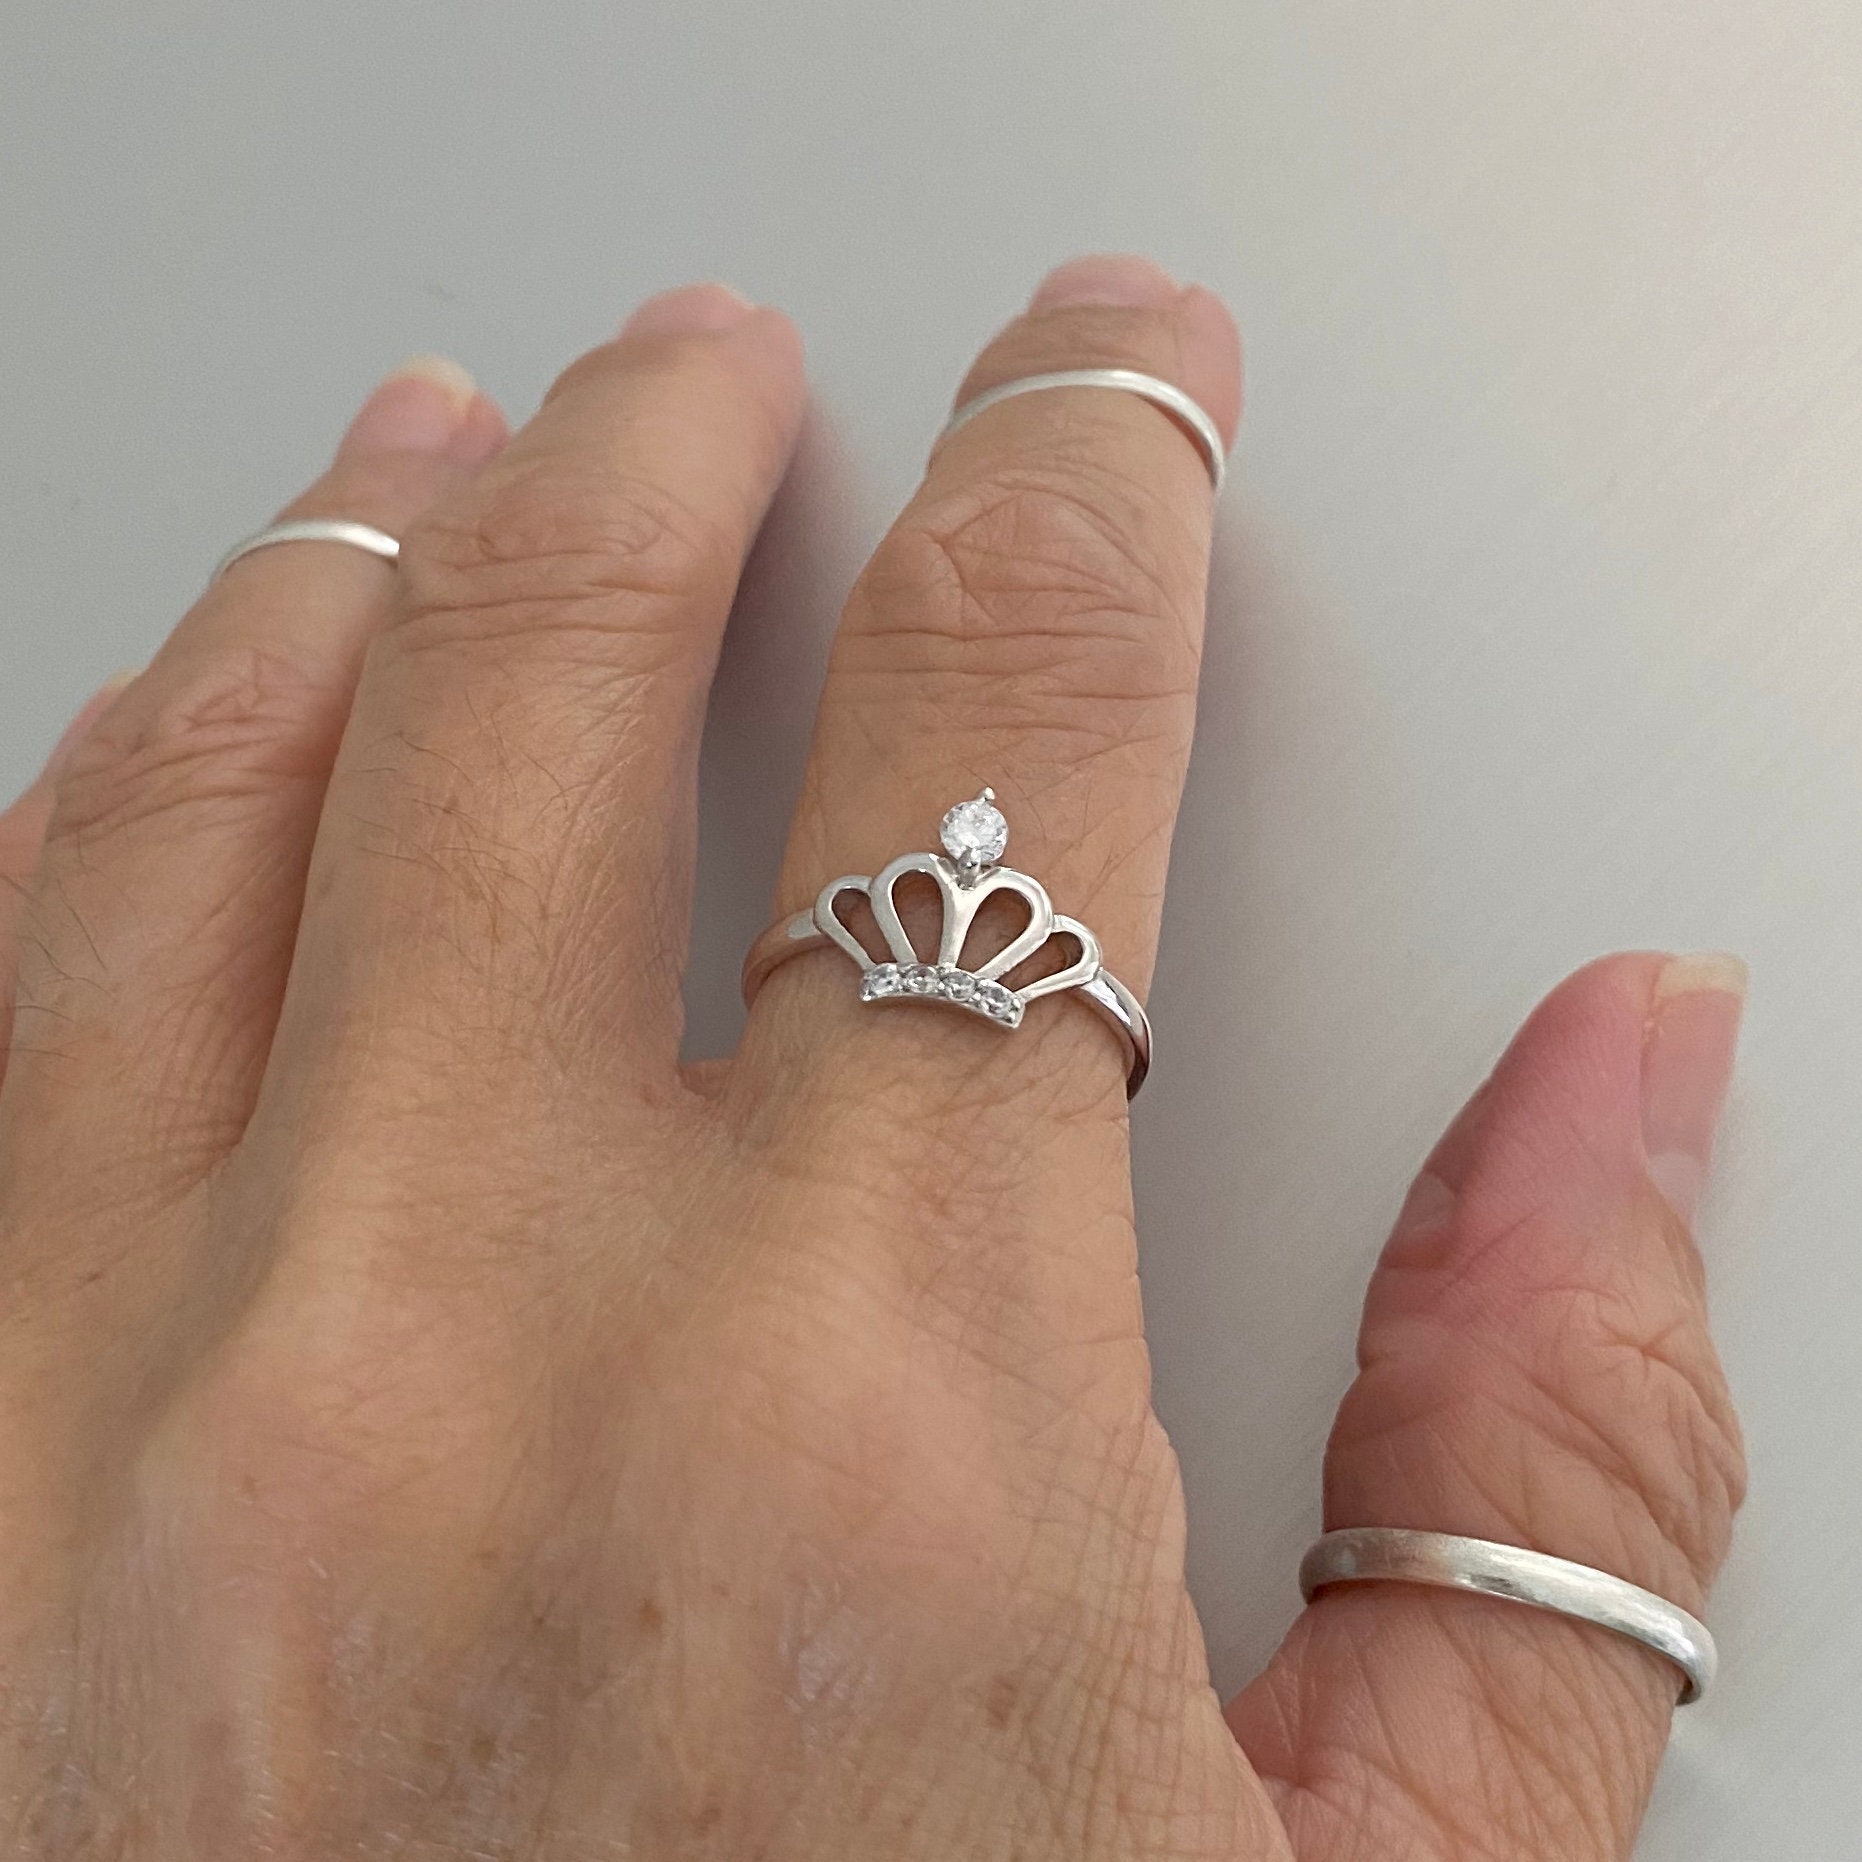 Jo Wisdom Sterling Silver Crown Ring | eBay